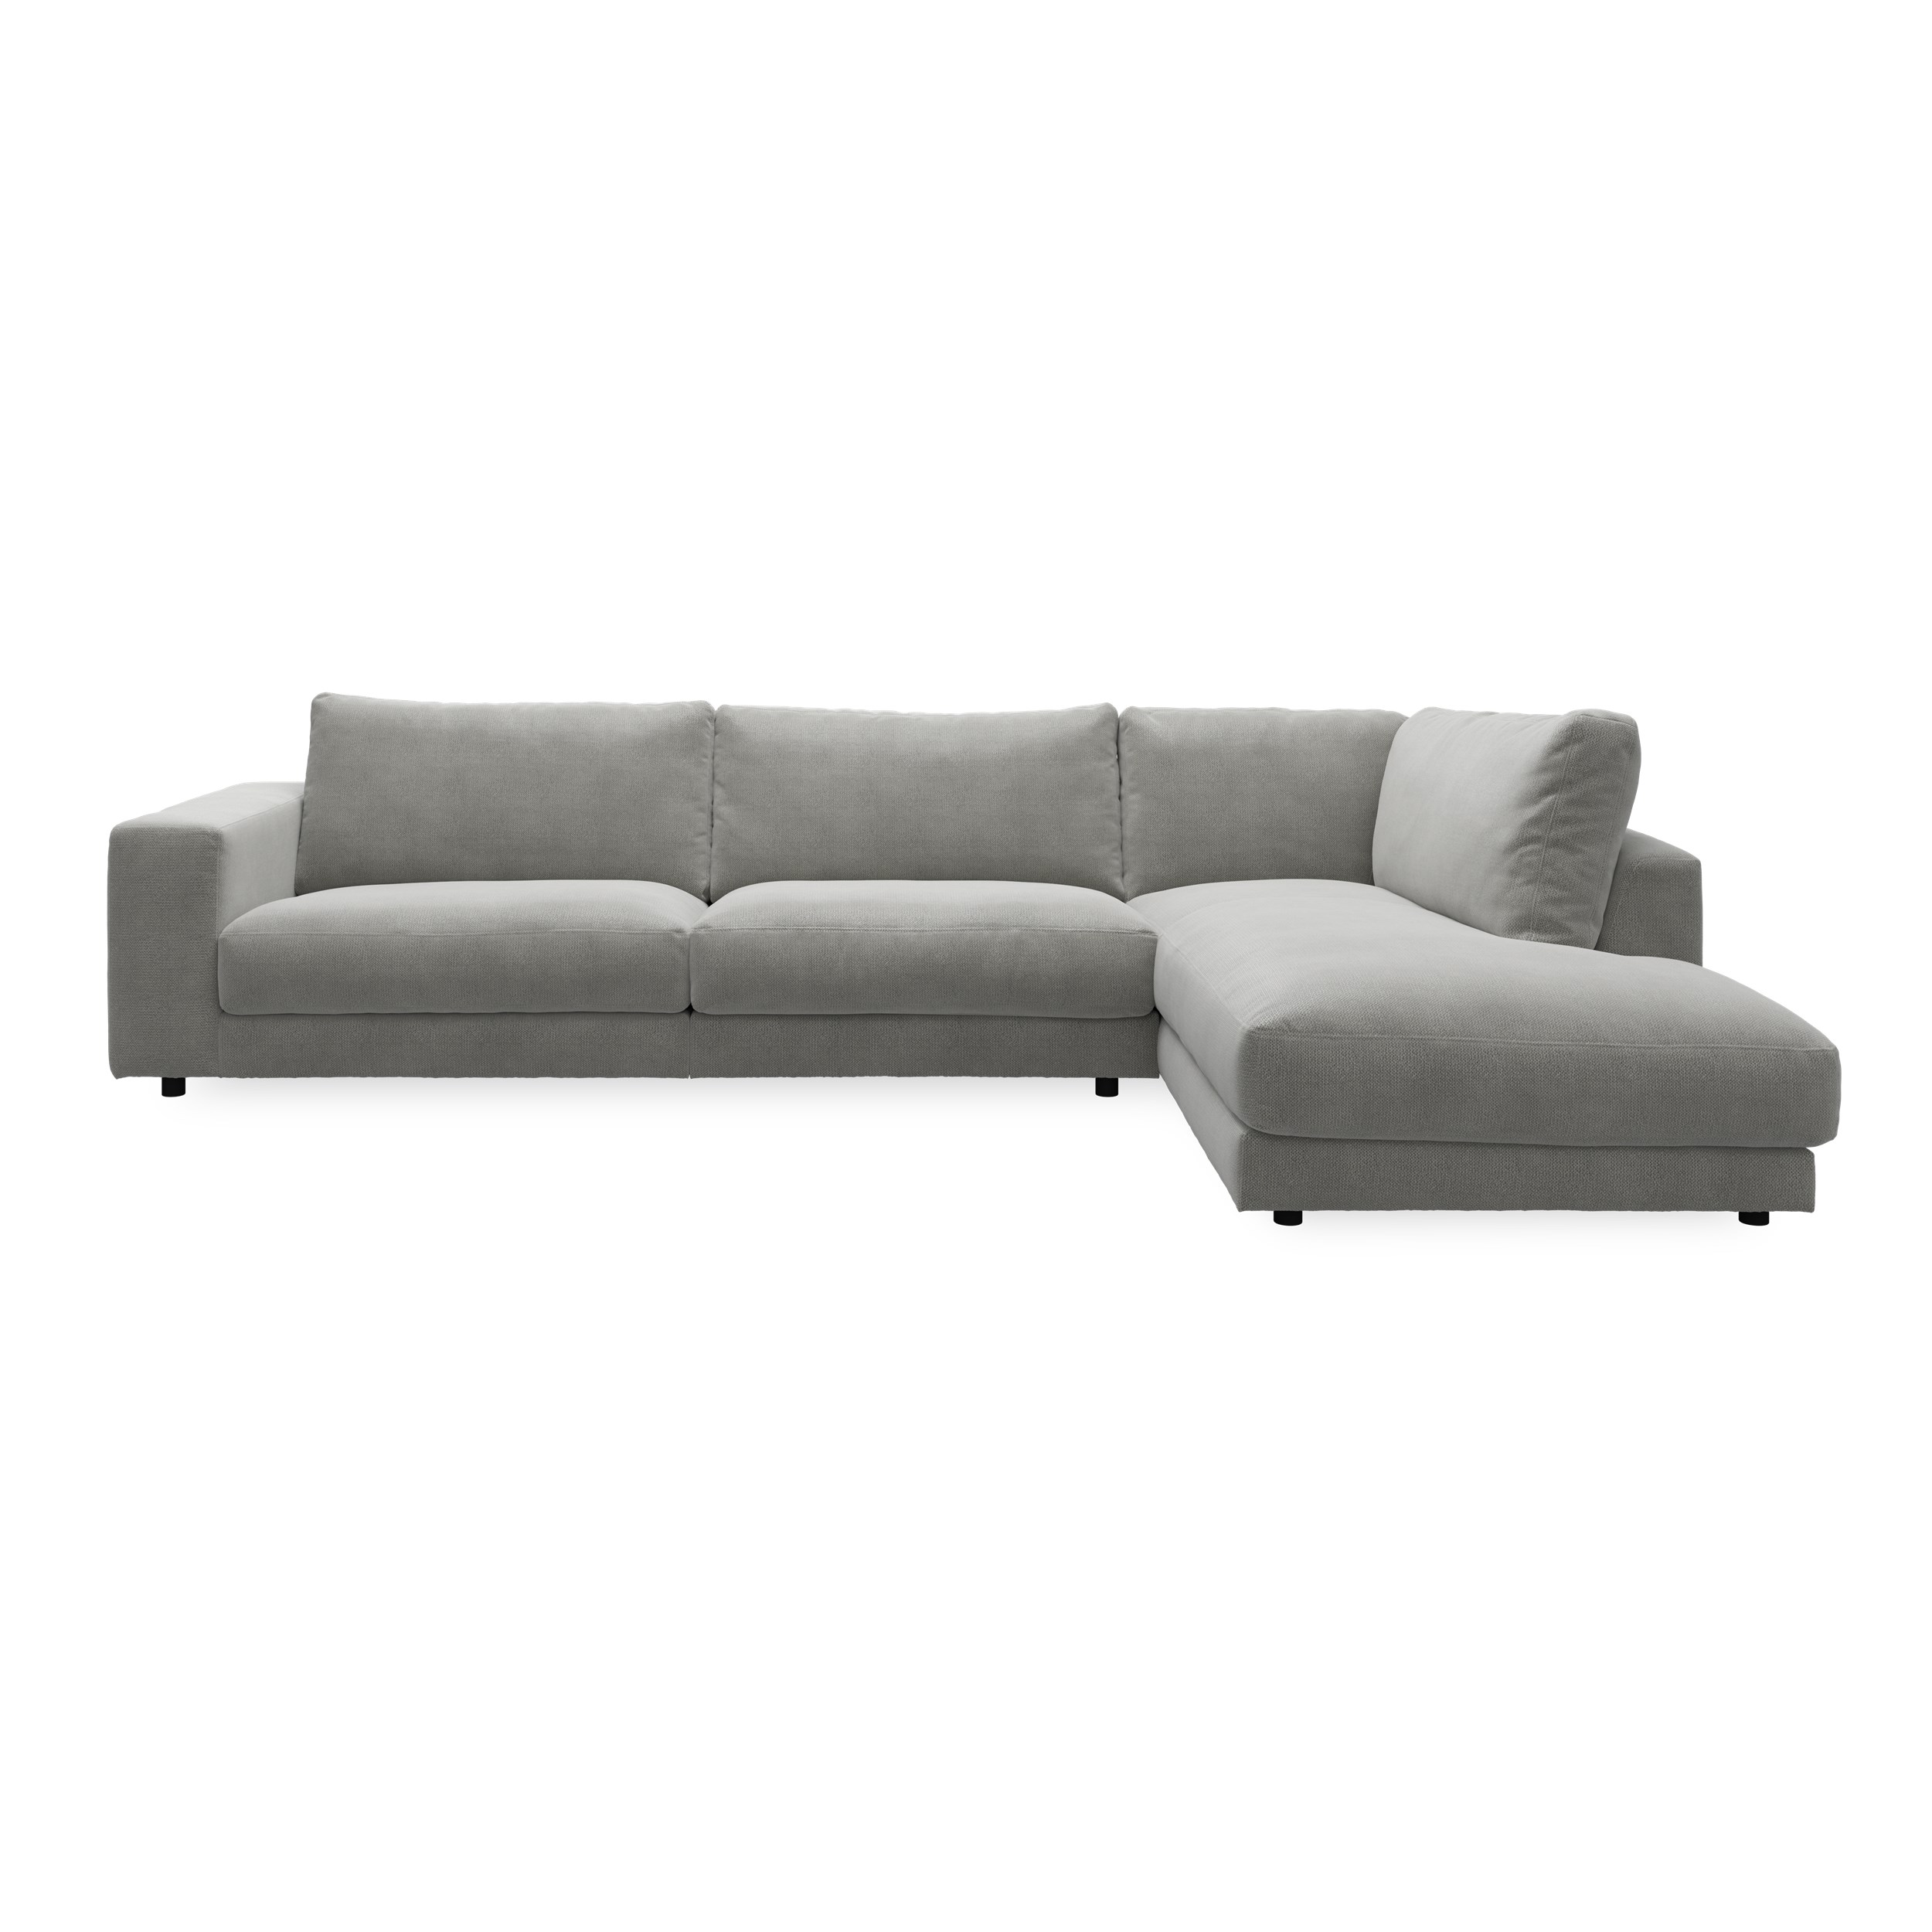 Bennent högervänd soffa med divan - Picasso Anthrazit klädsel, ben i svart plast och S:skum/fib/din/sili R:Dun/skum